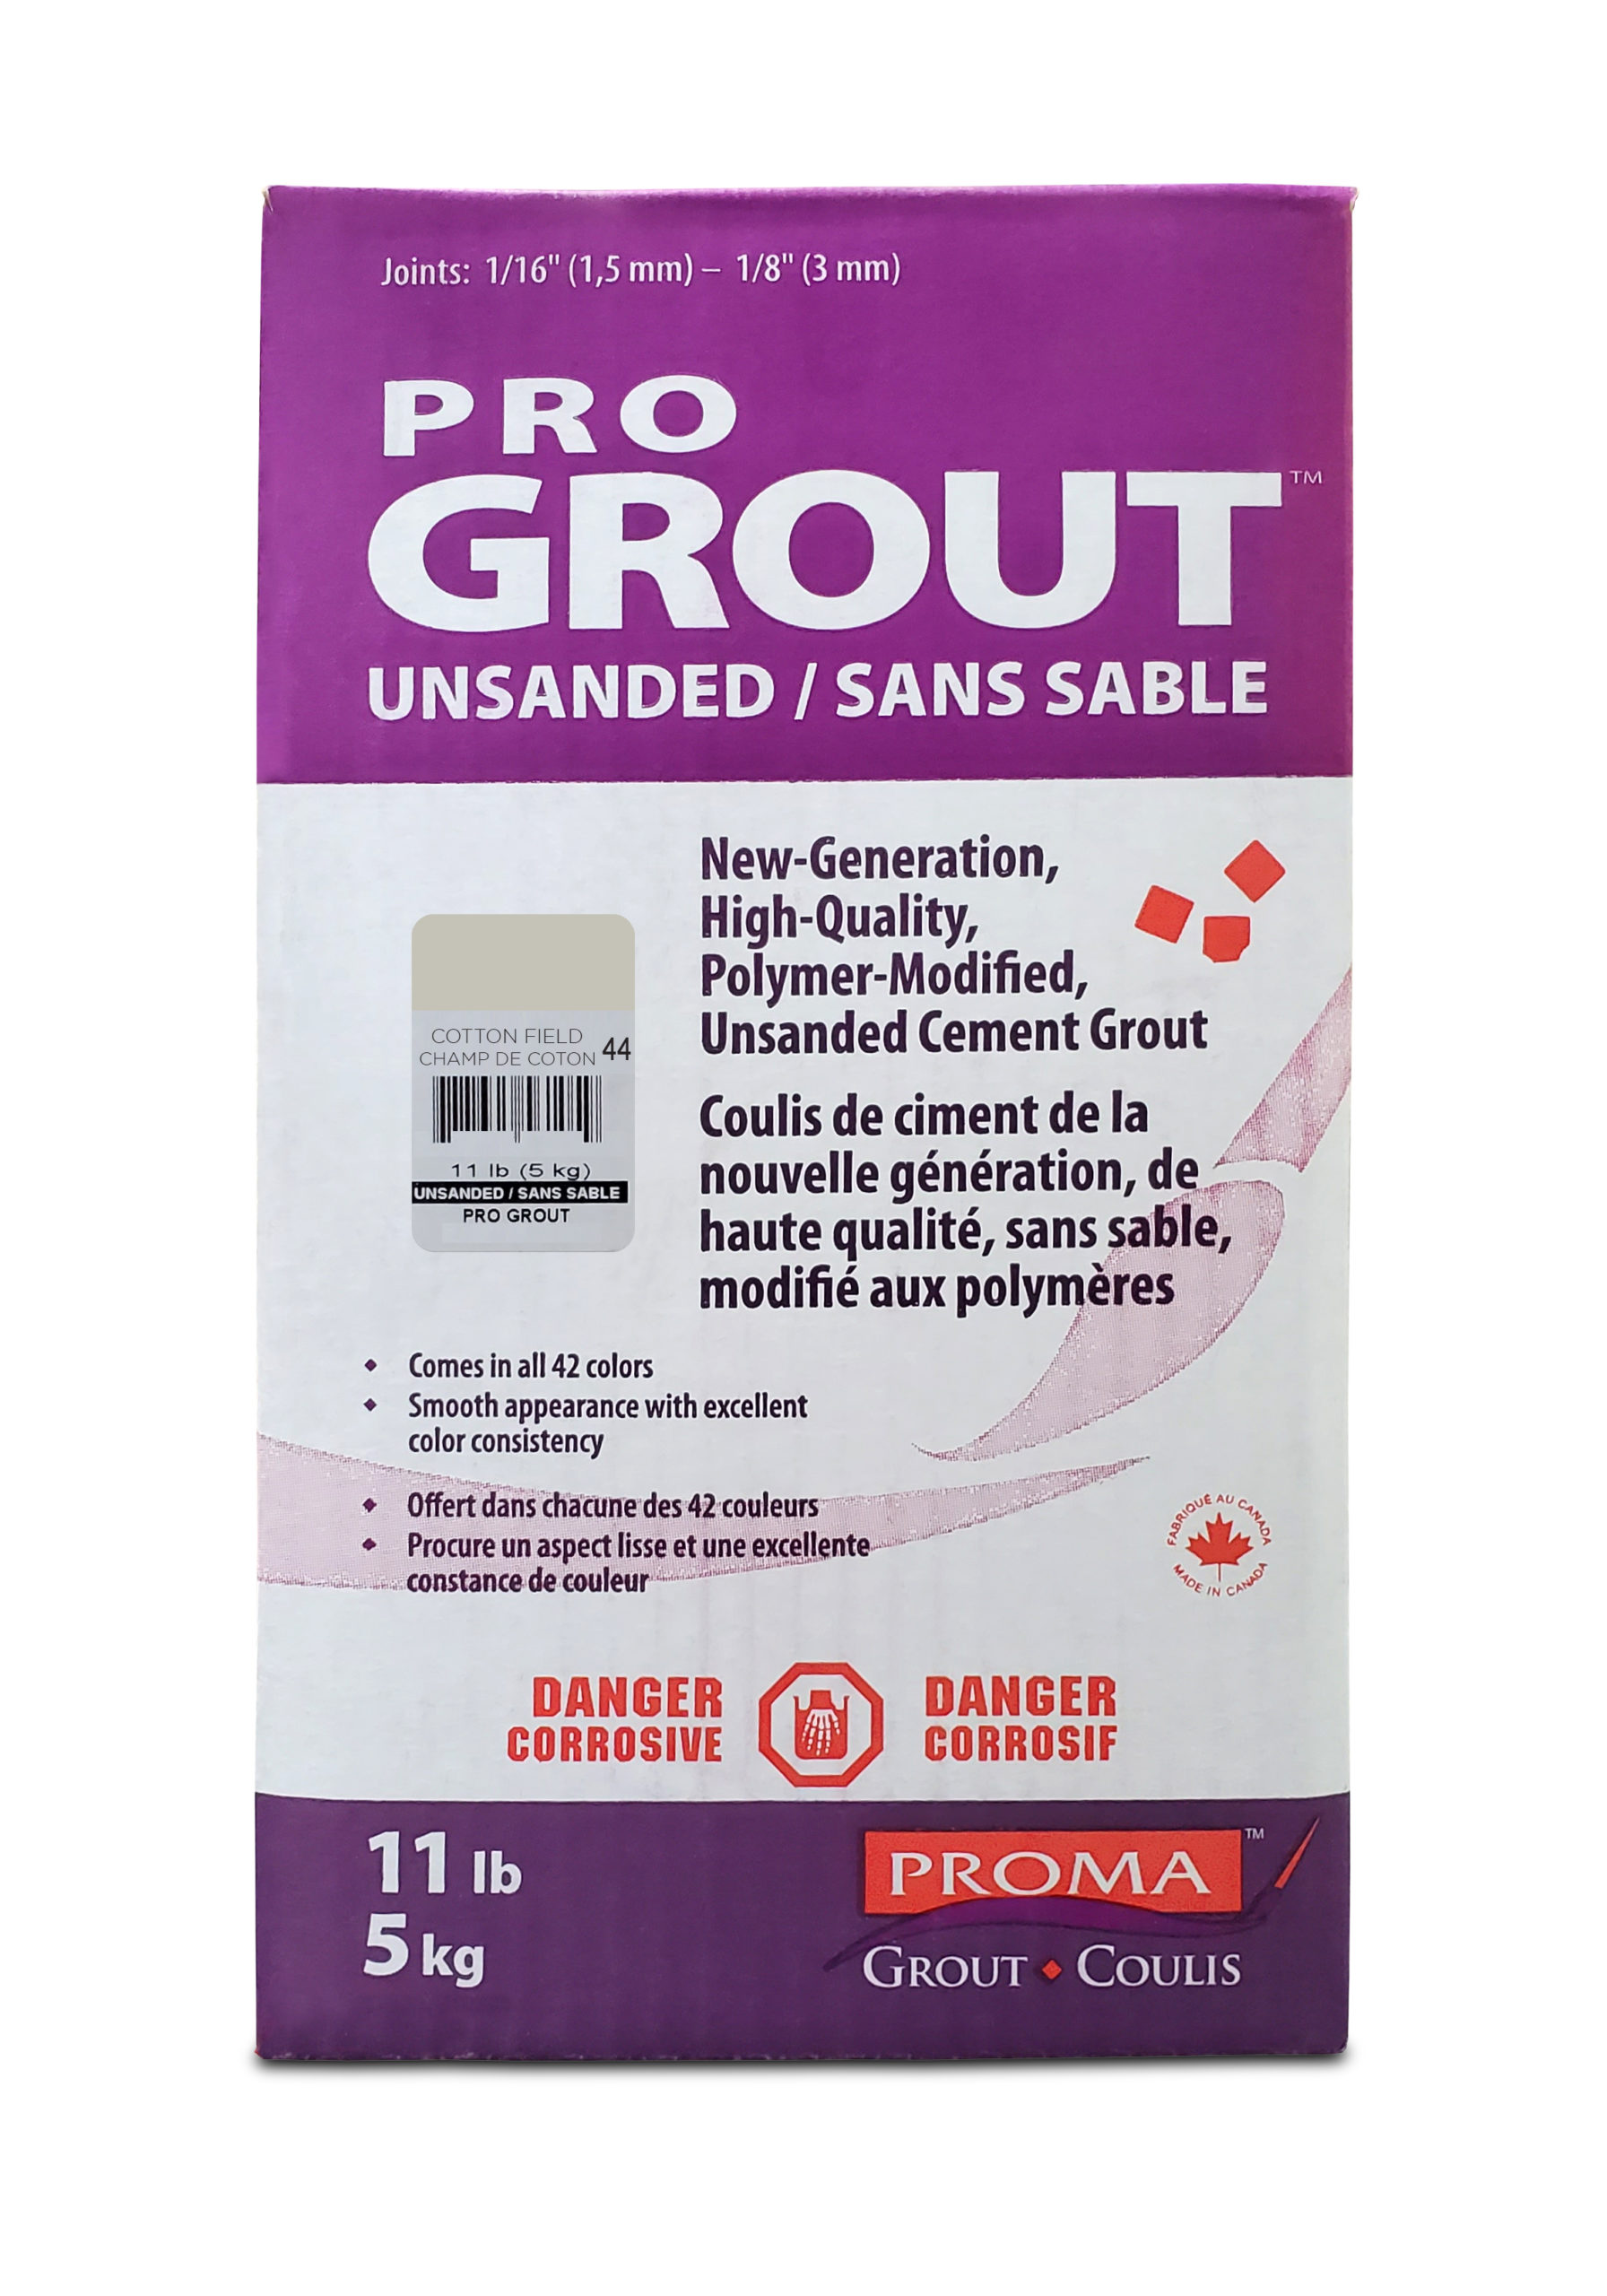 Pro Grout – Unsanded_Cotton Field_5kg_11lb